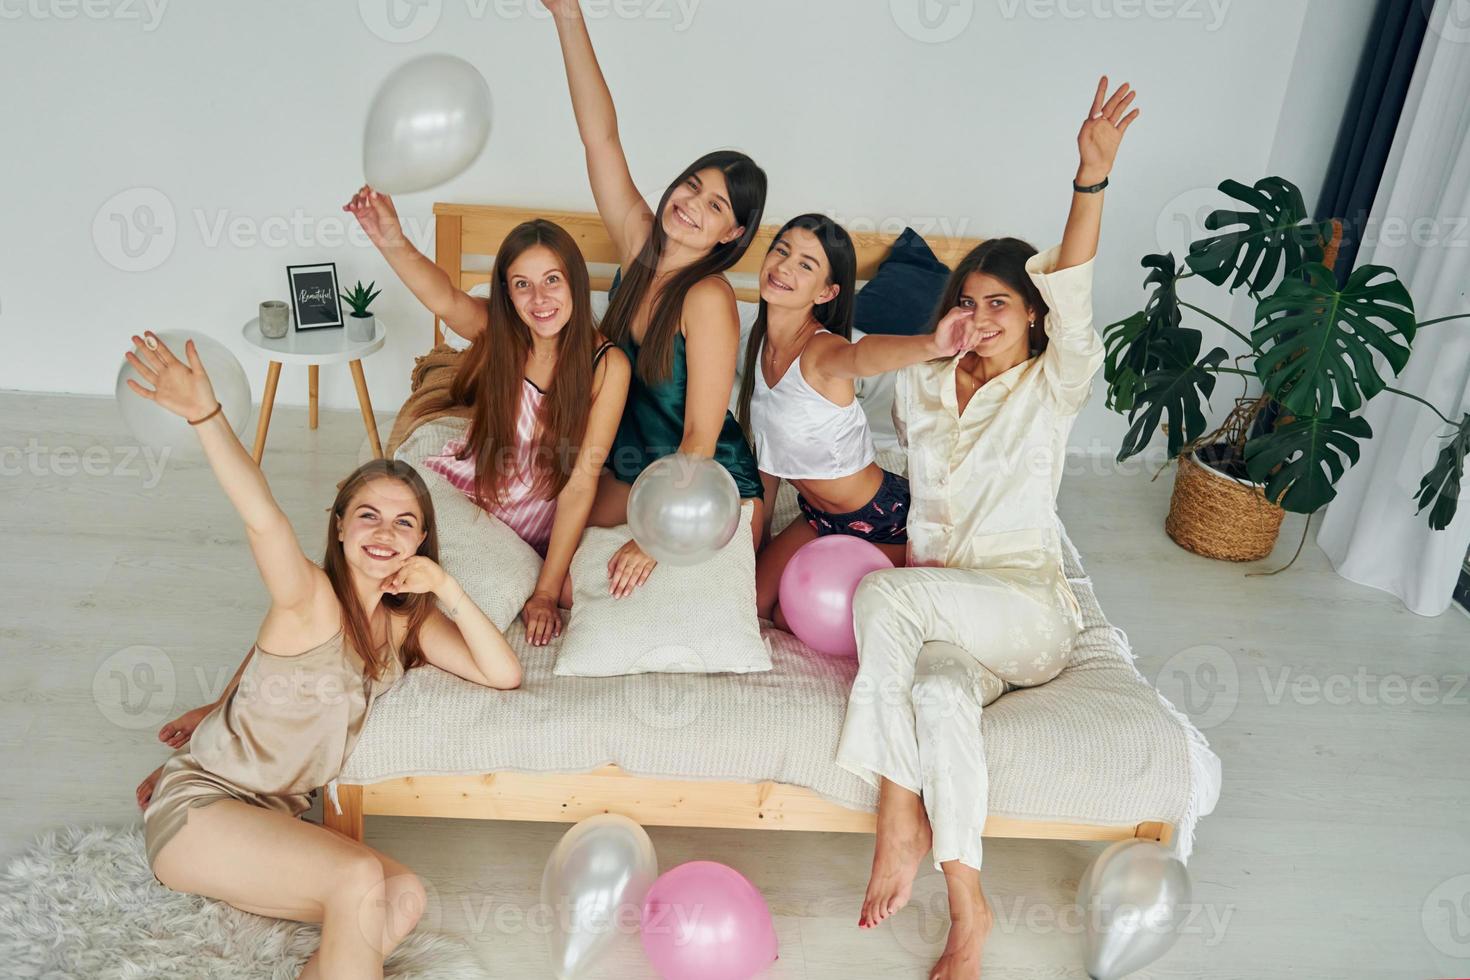 festa com balões. grupo de mulheres felizes que está em uma despedida de solteira foto